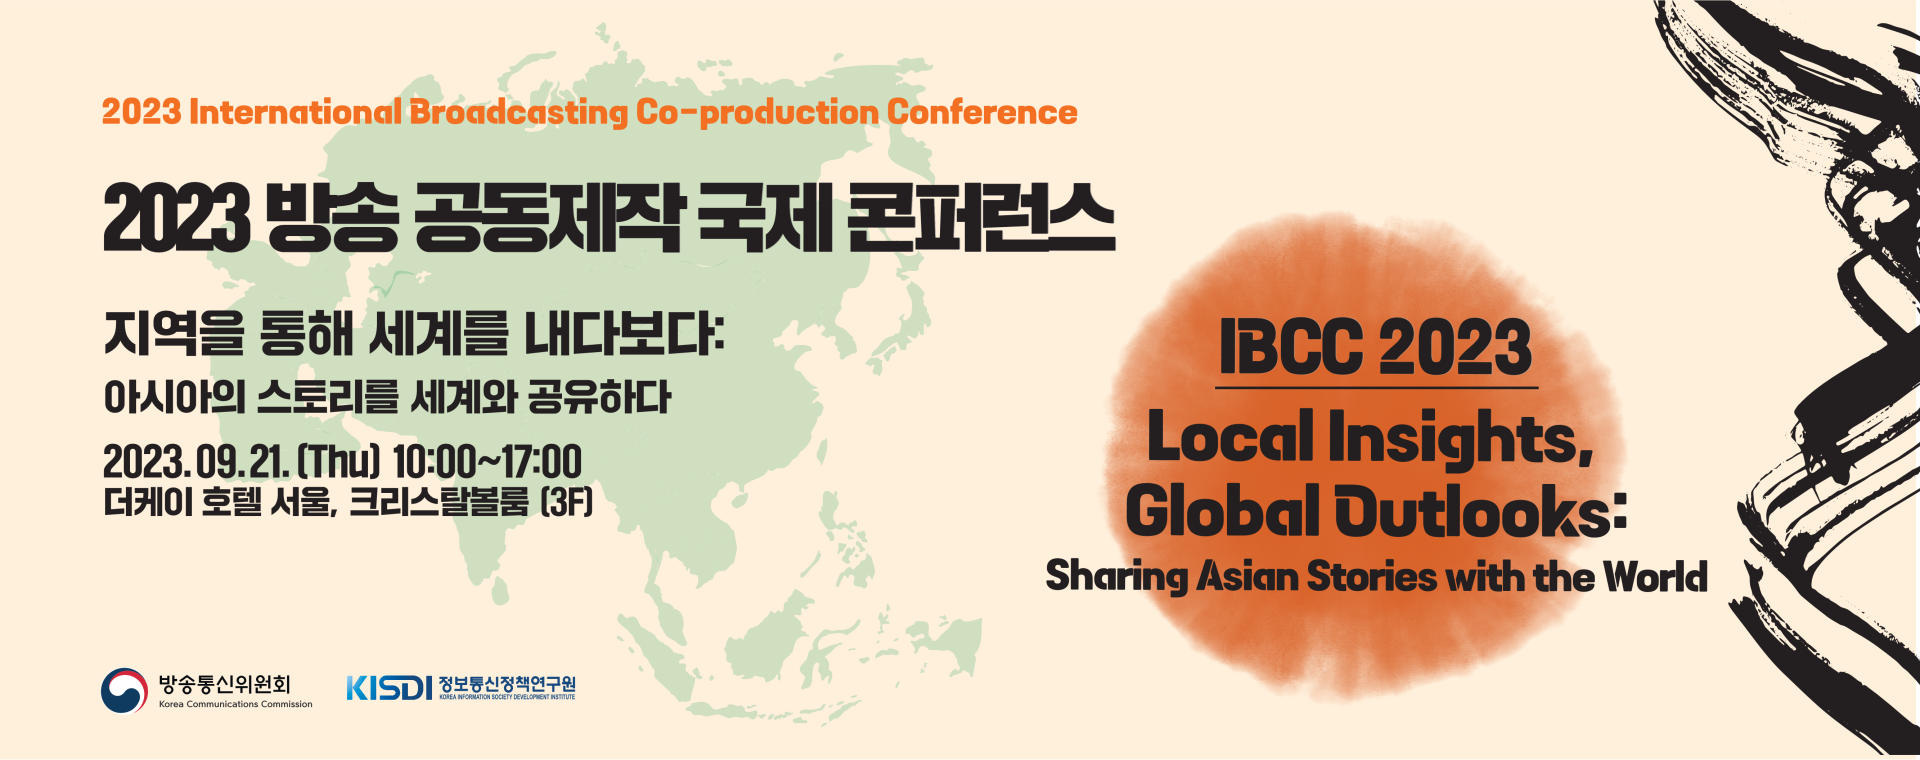 2023 방송 공동제작 국제 컨퍼런스(IBCC)